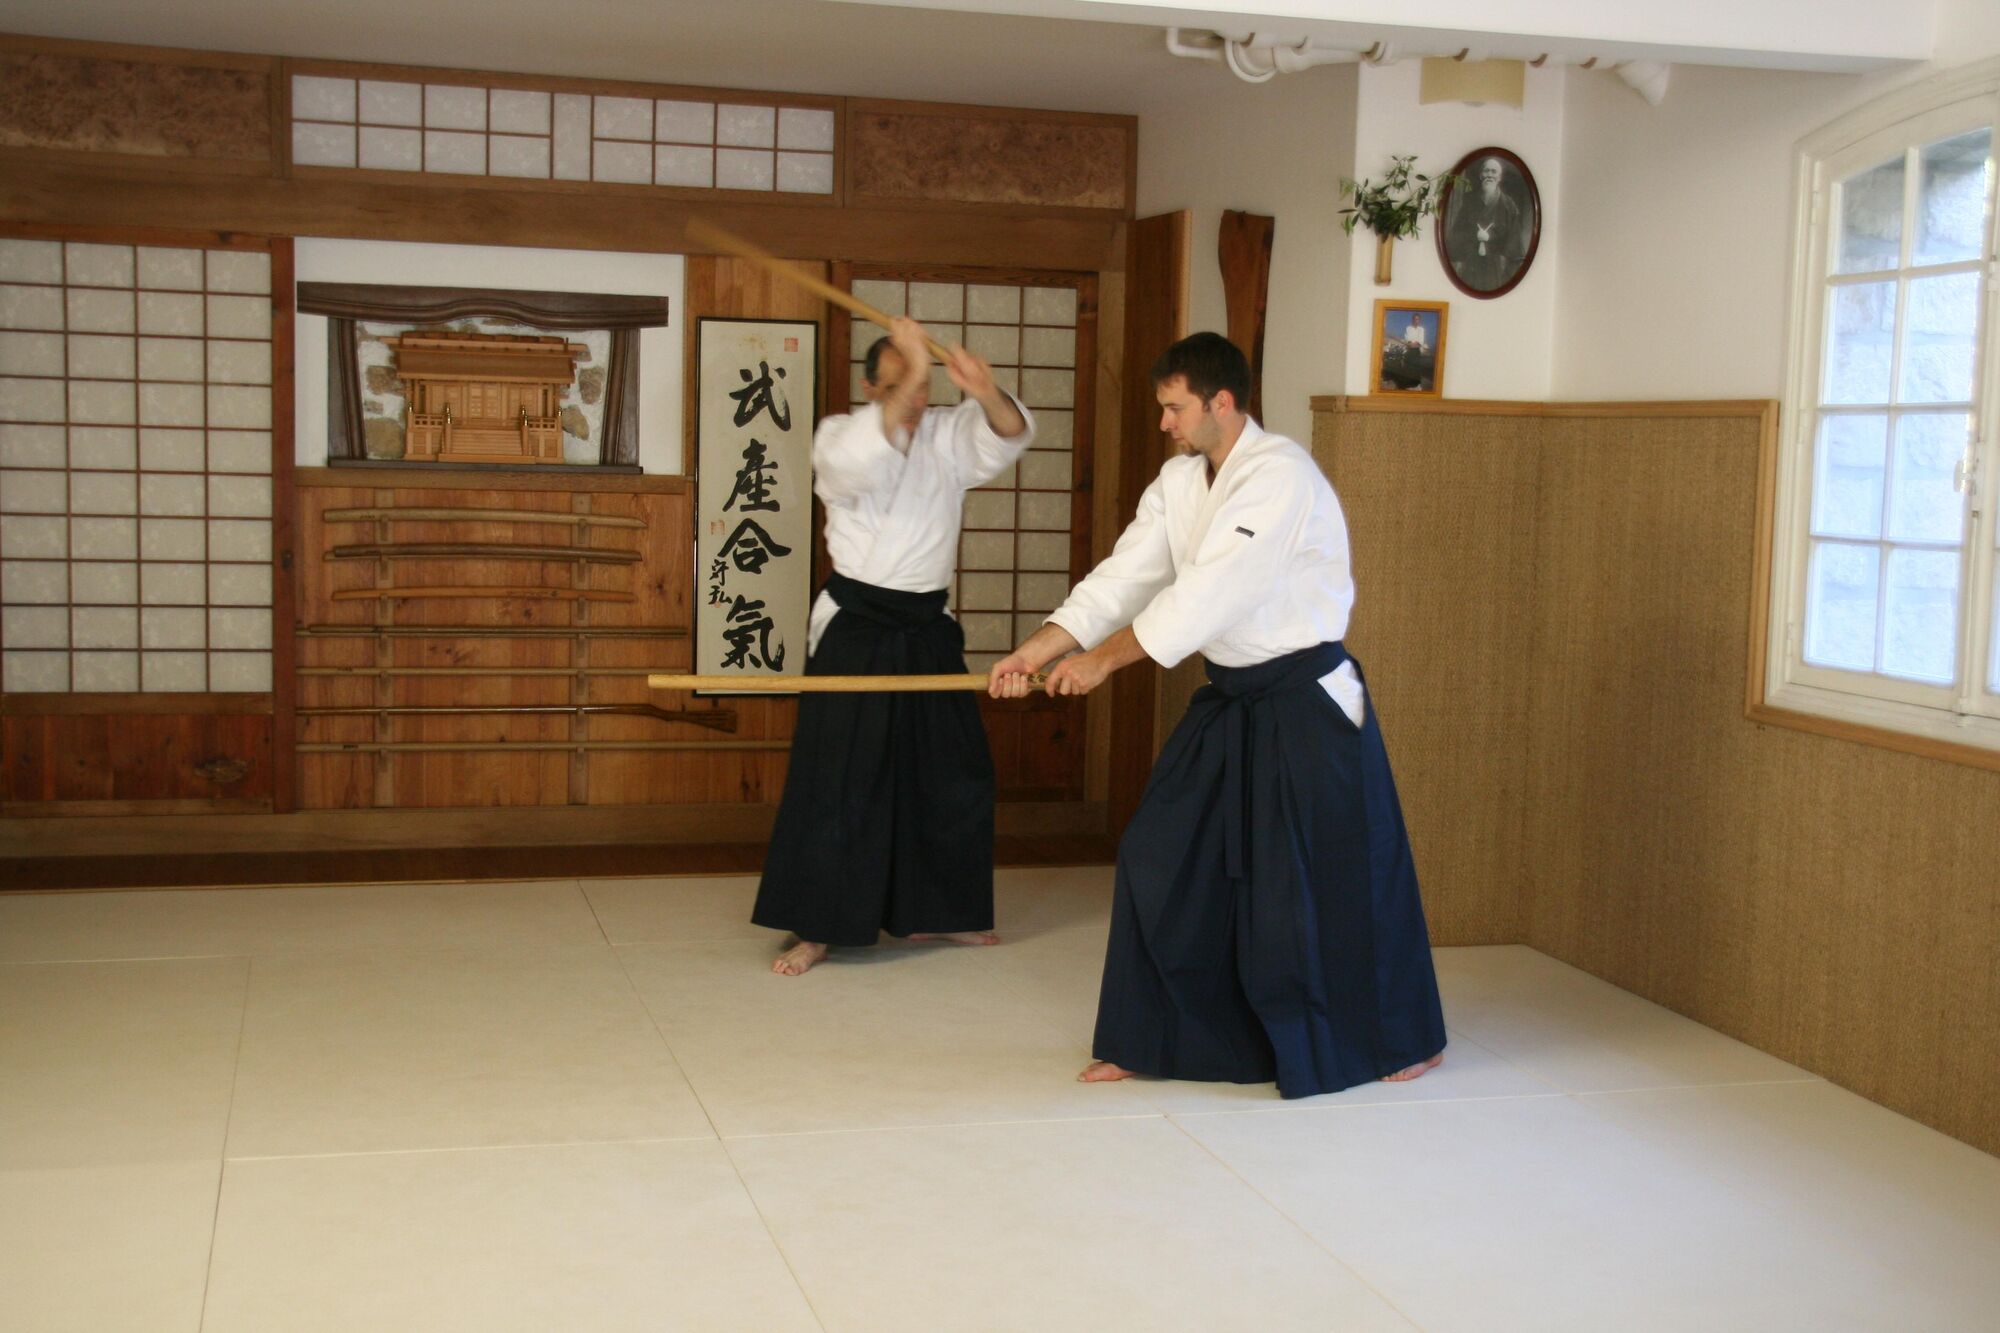 Ken / Tai jutsu #8 - Yokomen uchi kote gaeshi